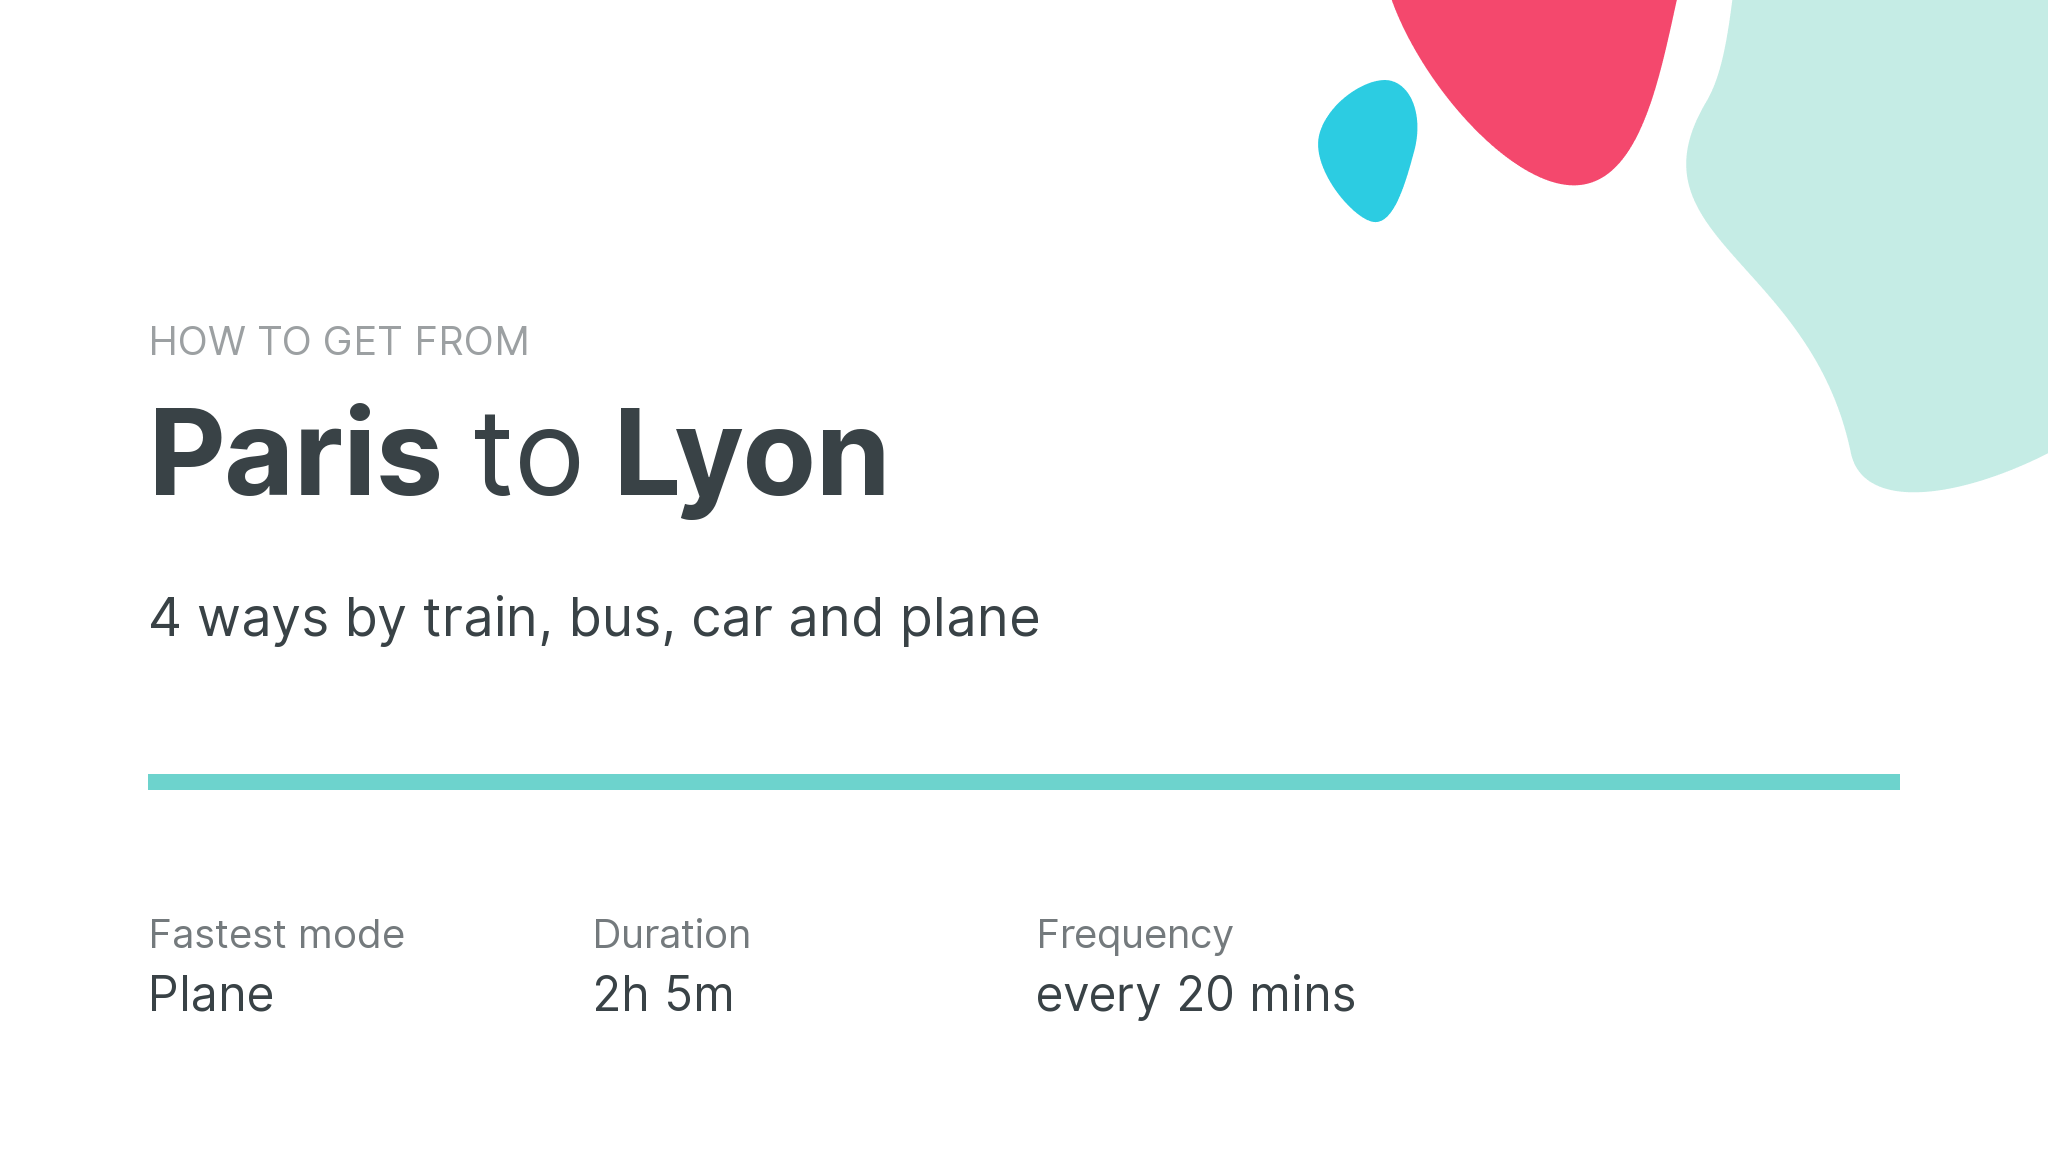 How do I get from Paris to Lyon